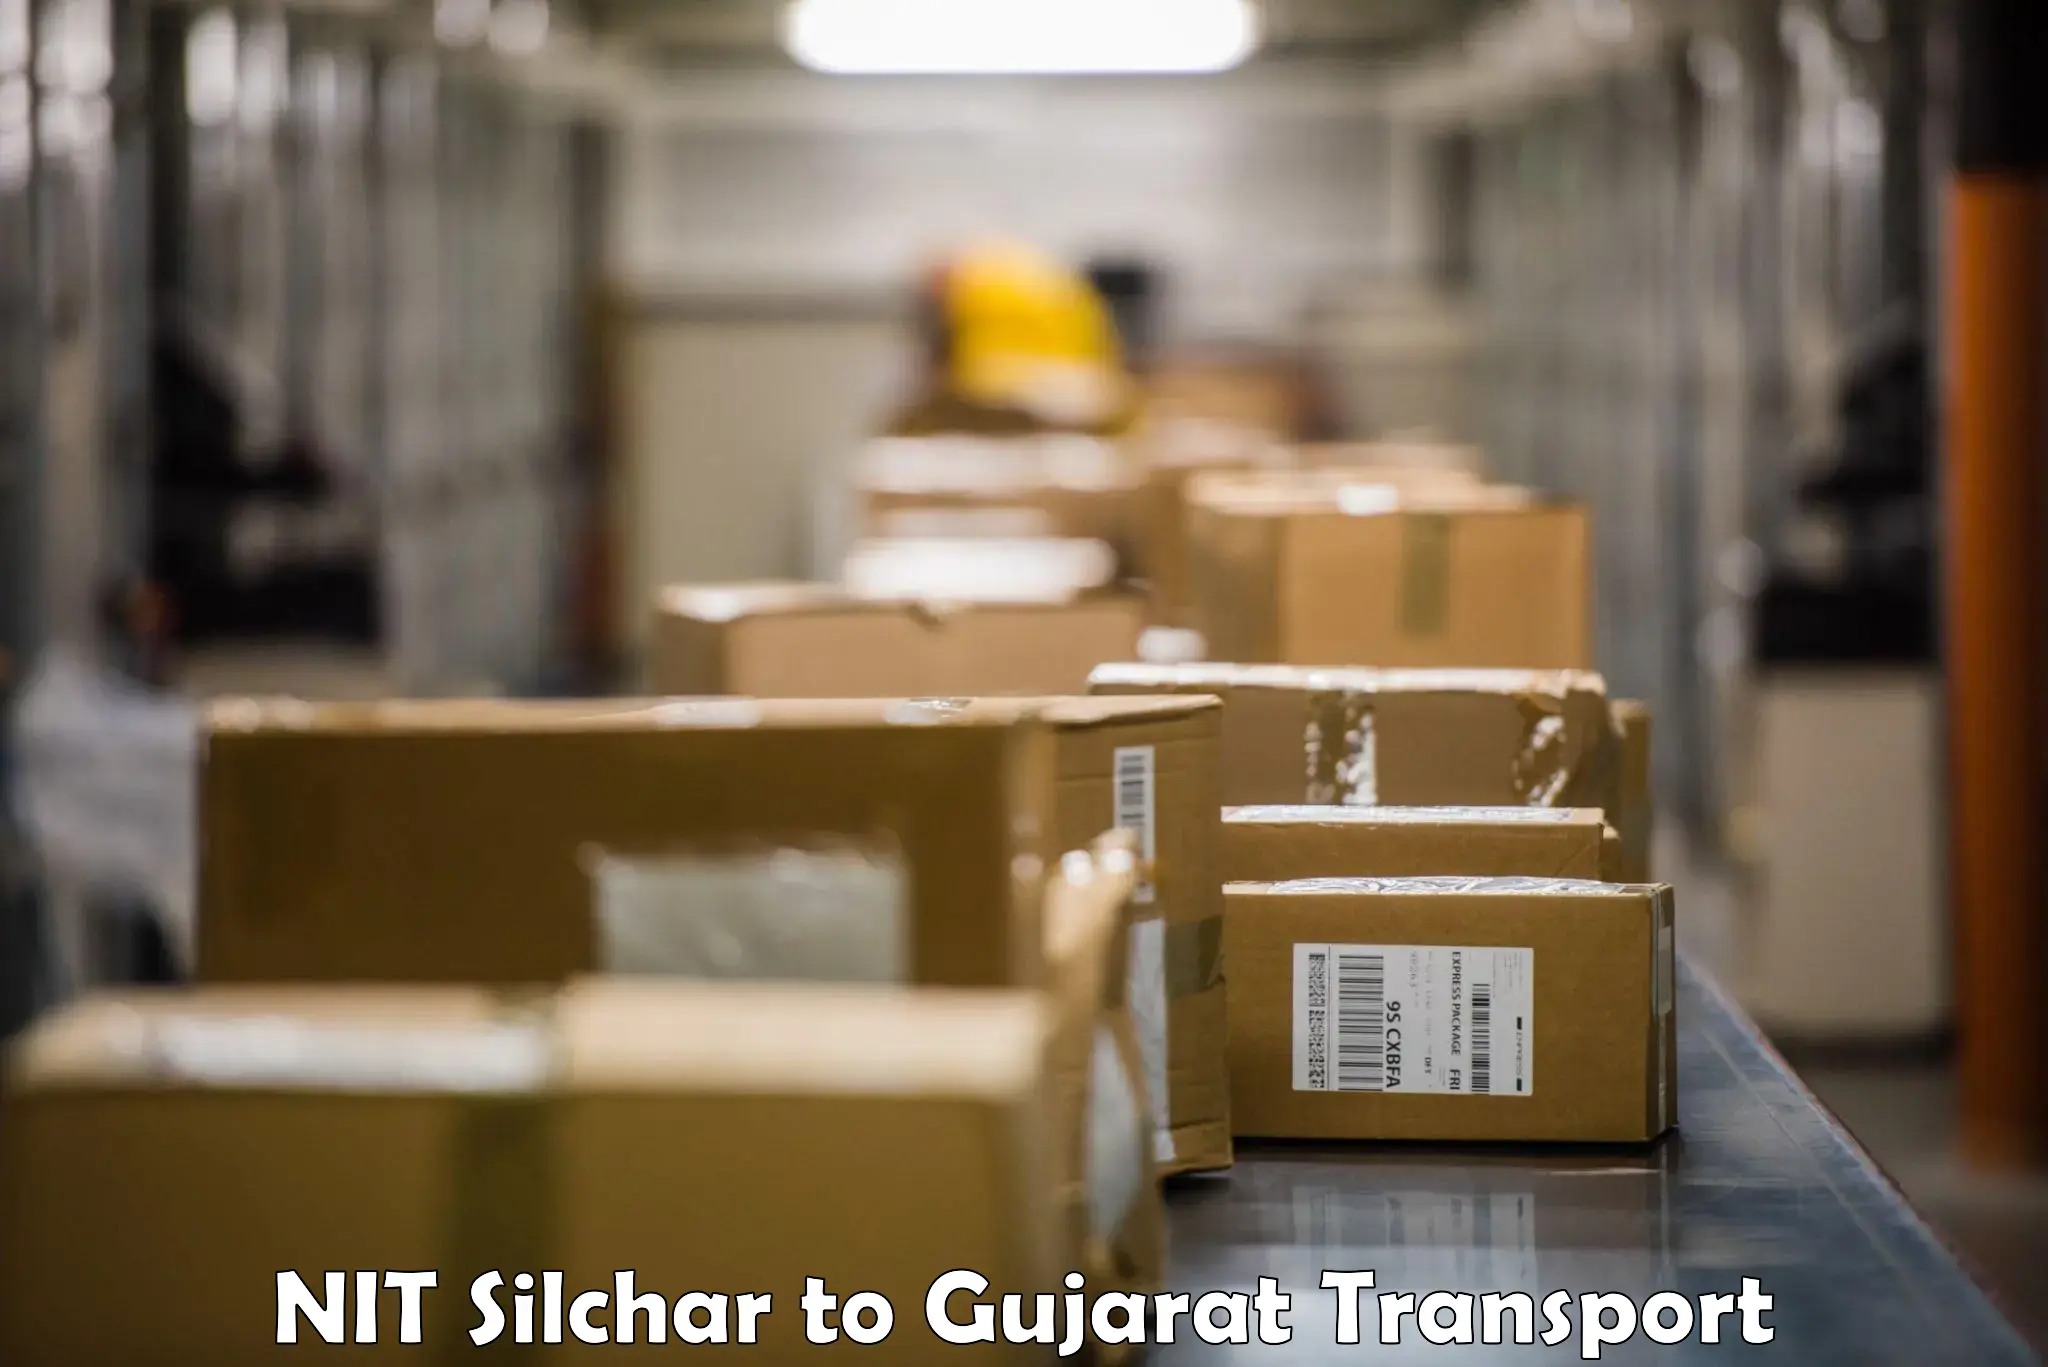 Bike shipping service NIT Silchar to Gujarat